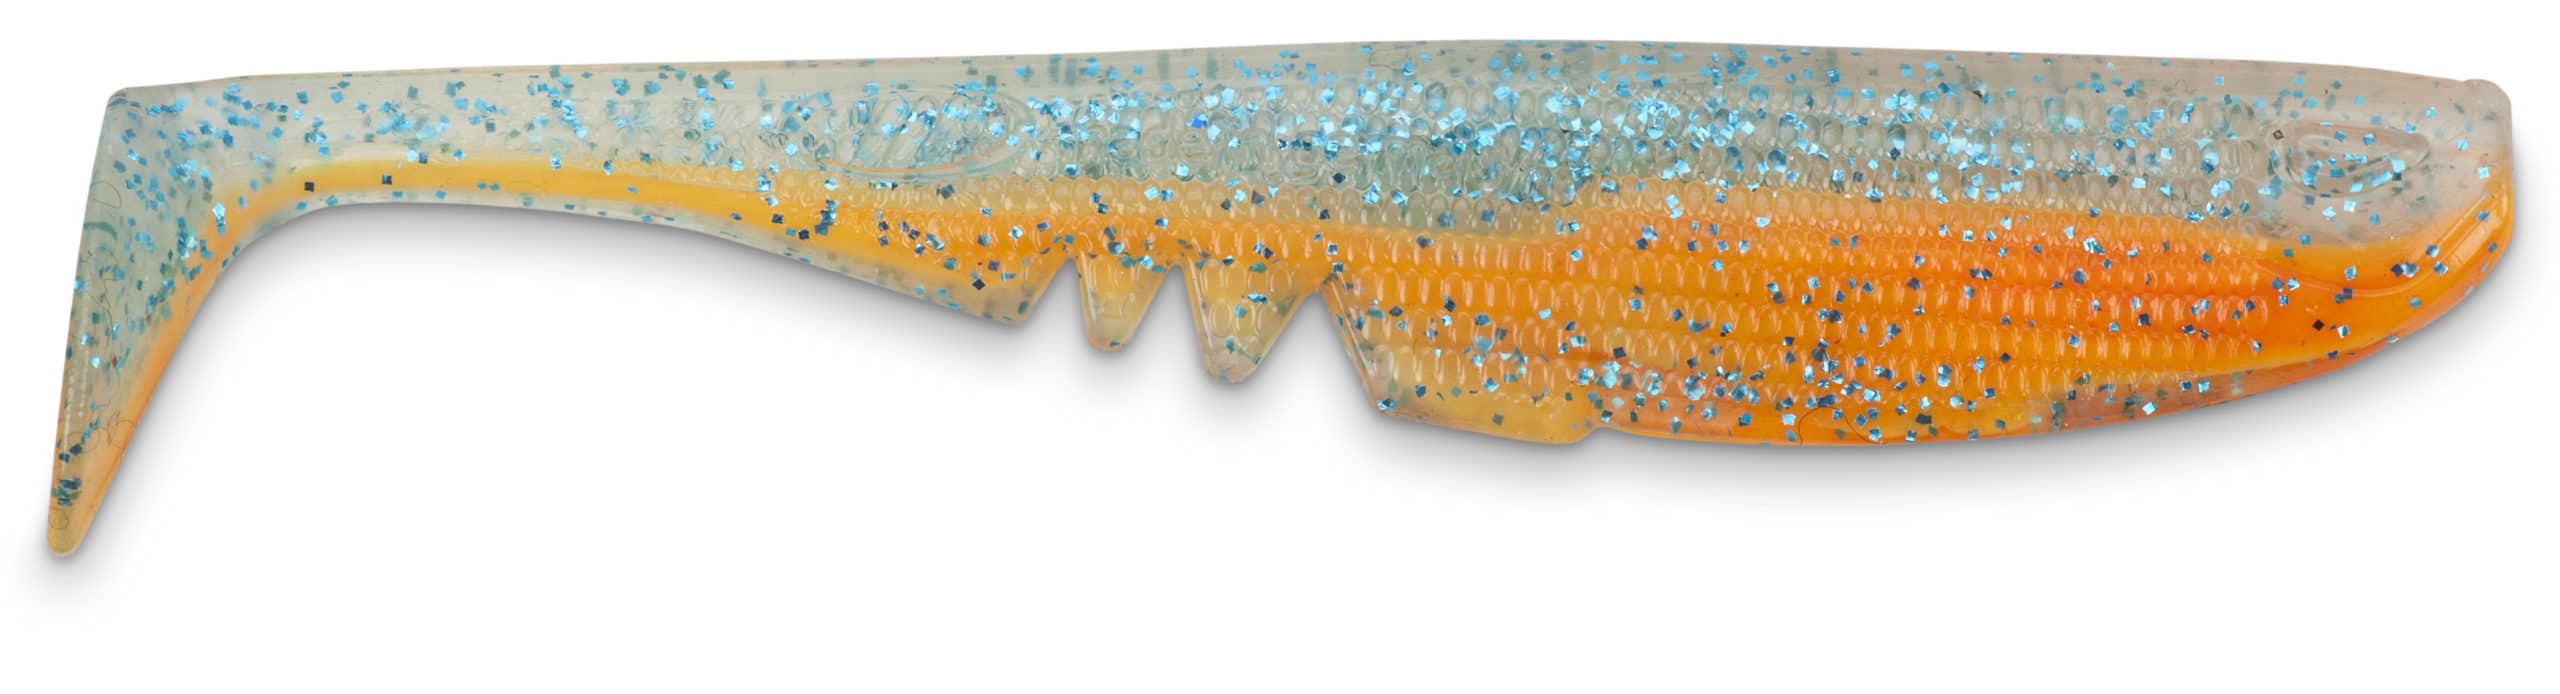 IC Racker Shad 22cm Blauwe Glitter Oranje